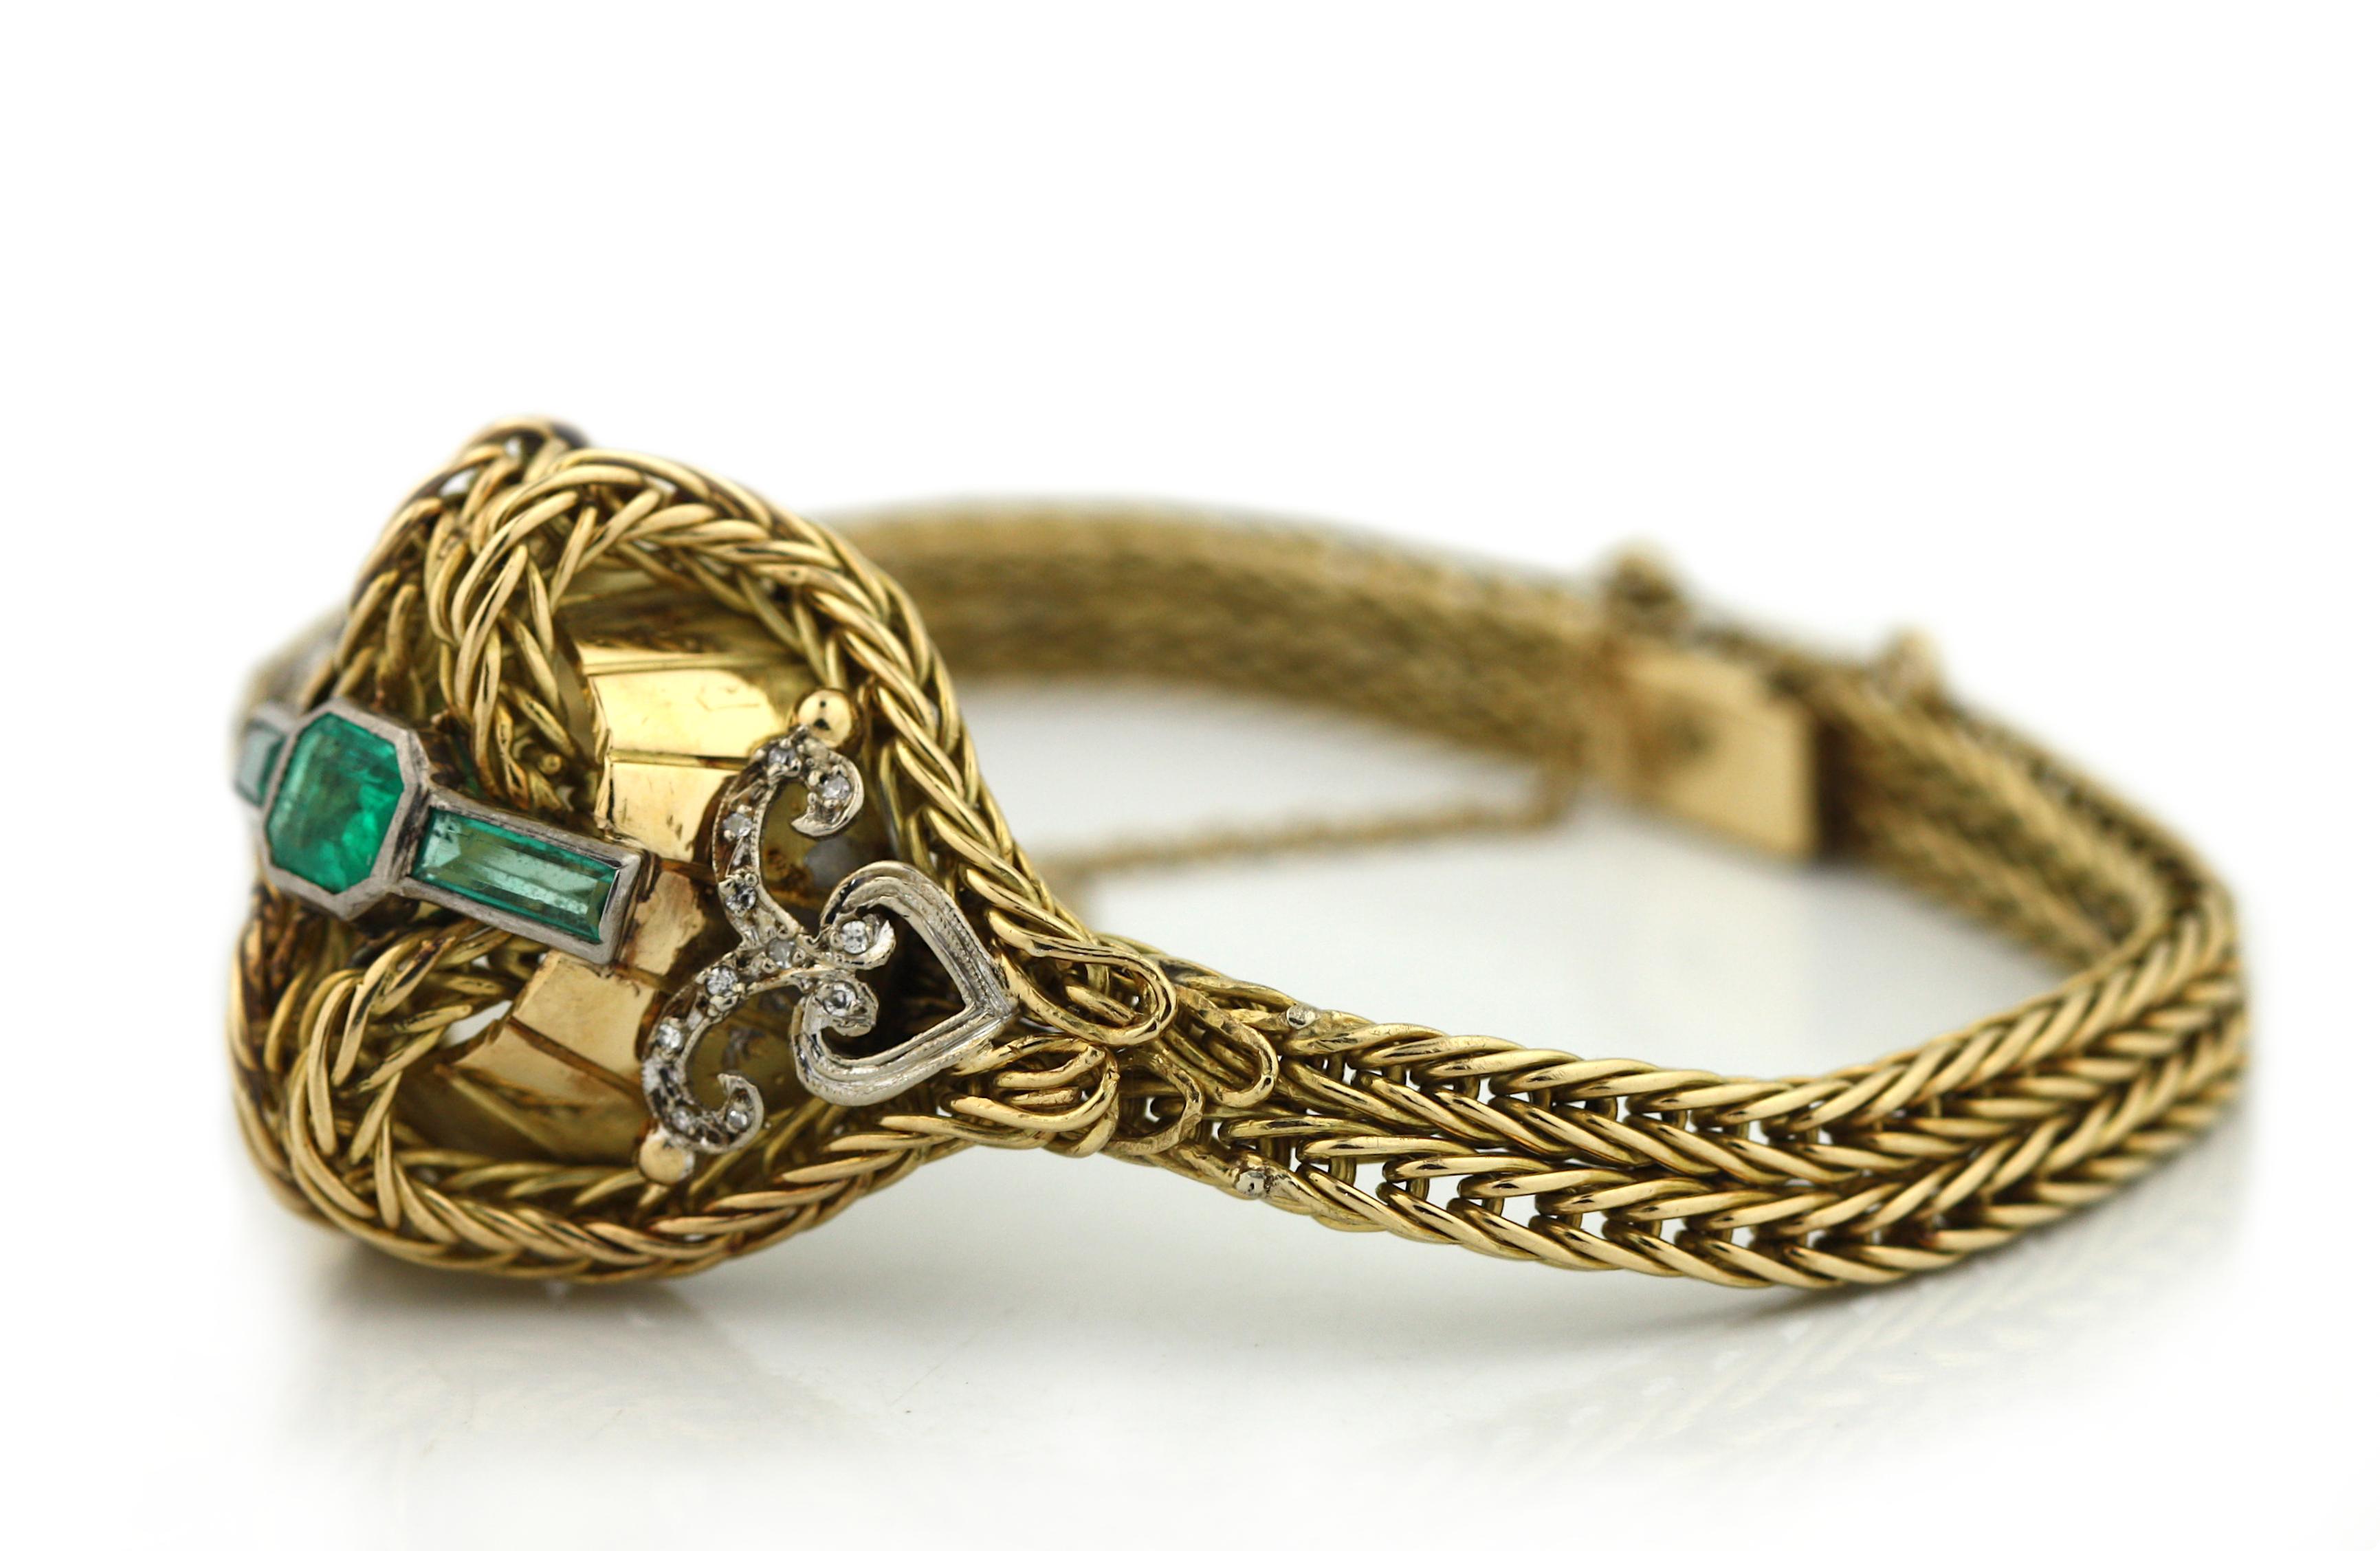 
Armband aus 18 Karat Gold, Farbsteinen und Diamanten
Bestehend aus geflochtenen Gliedern, die mit Diamantbändern verziert sind.
Diamanten mit einem Gesamtgewicht von etwa 0,60 Karat
Länge 7 Zoll
Unterzeichnet
Bruttogewicht etwa 27.6 dwts